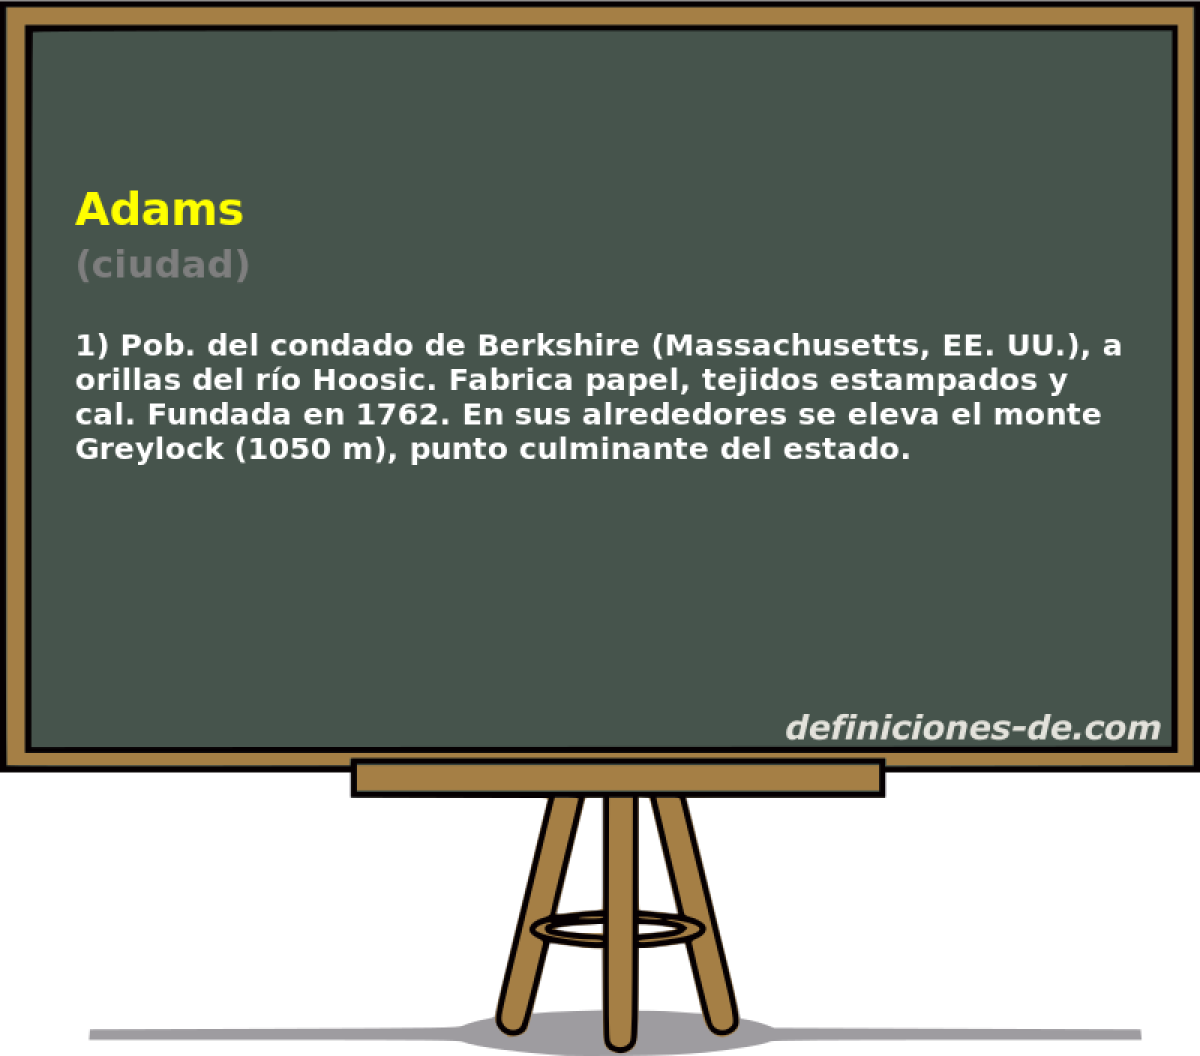 Adams (ciudad)